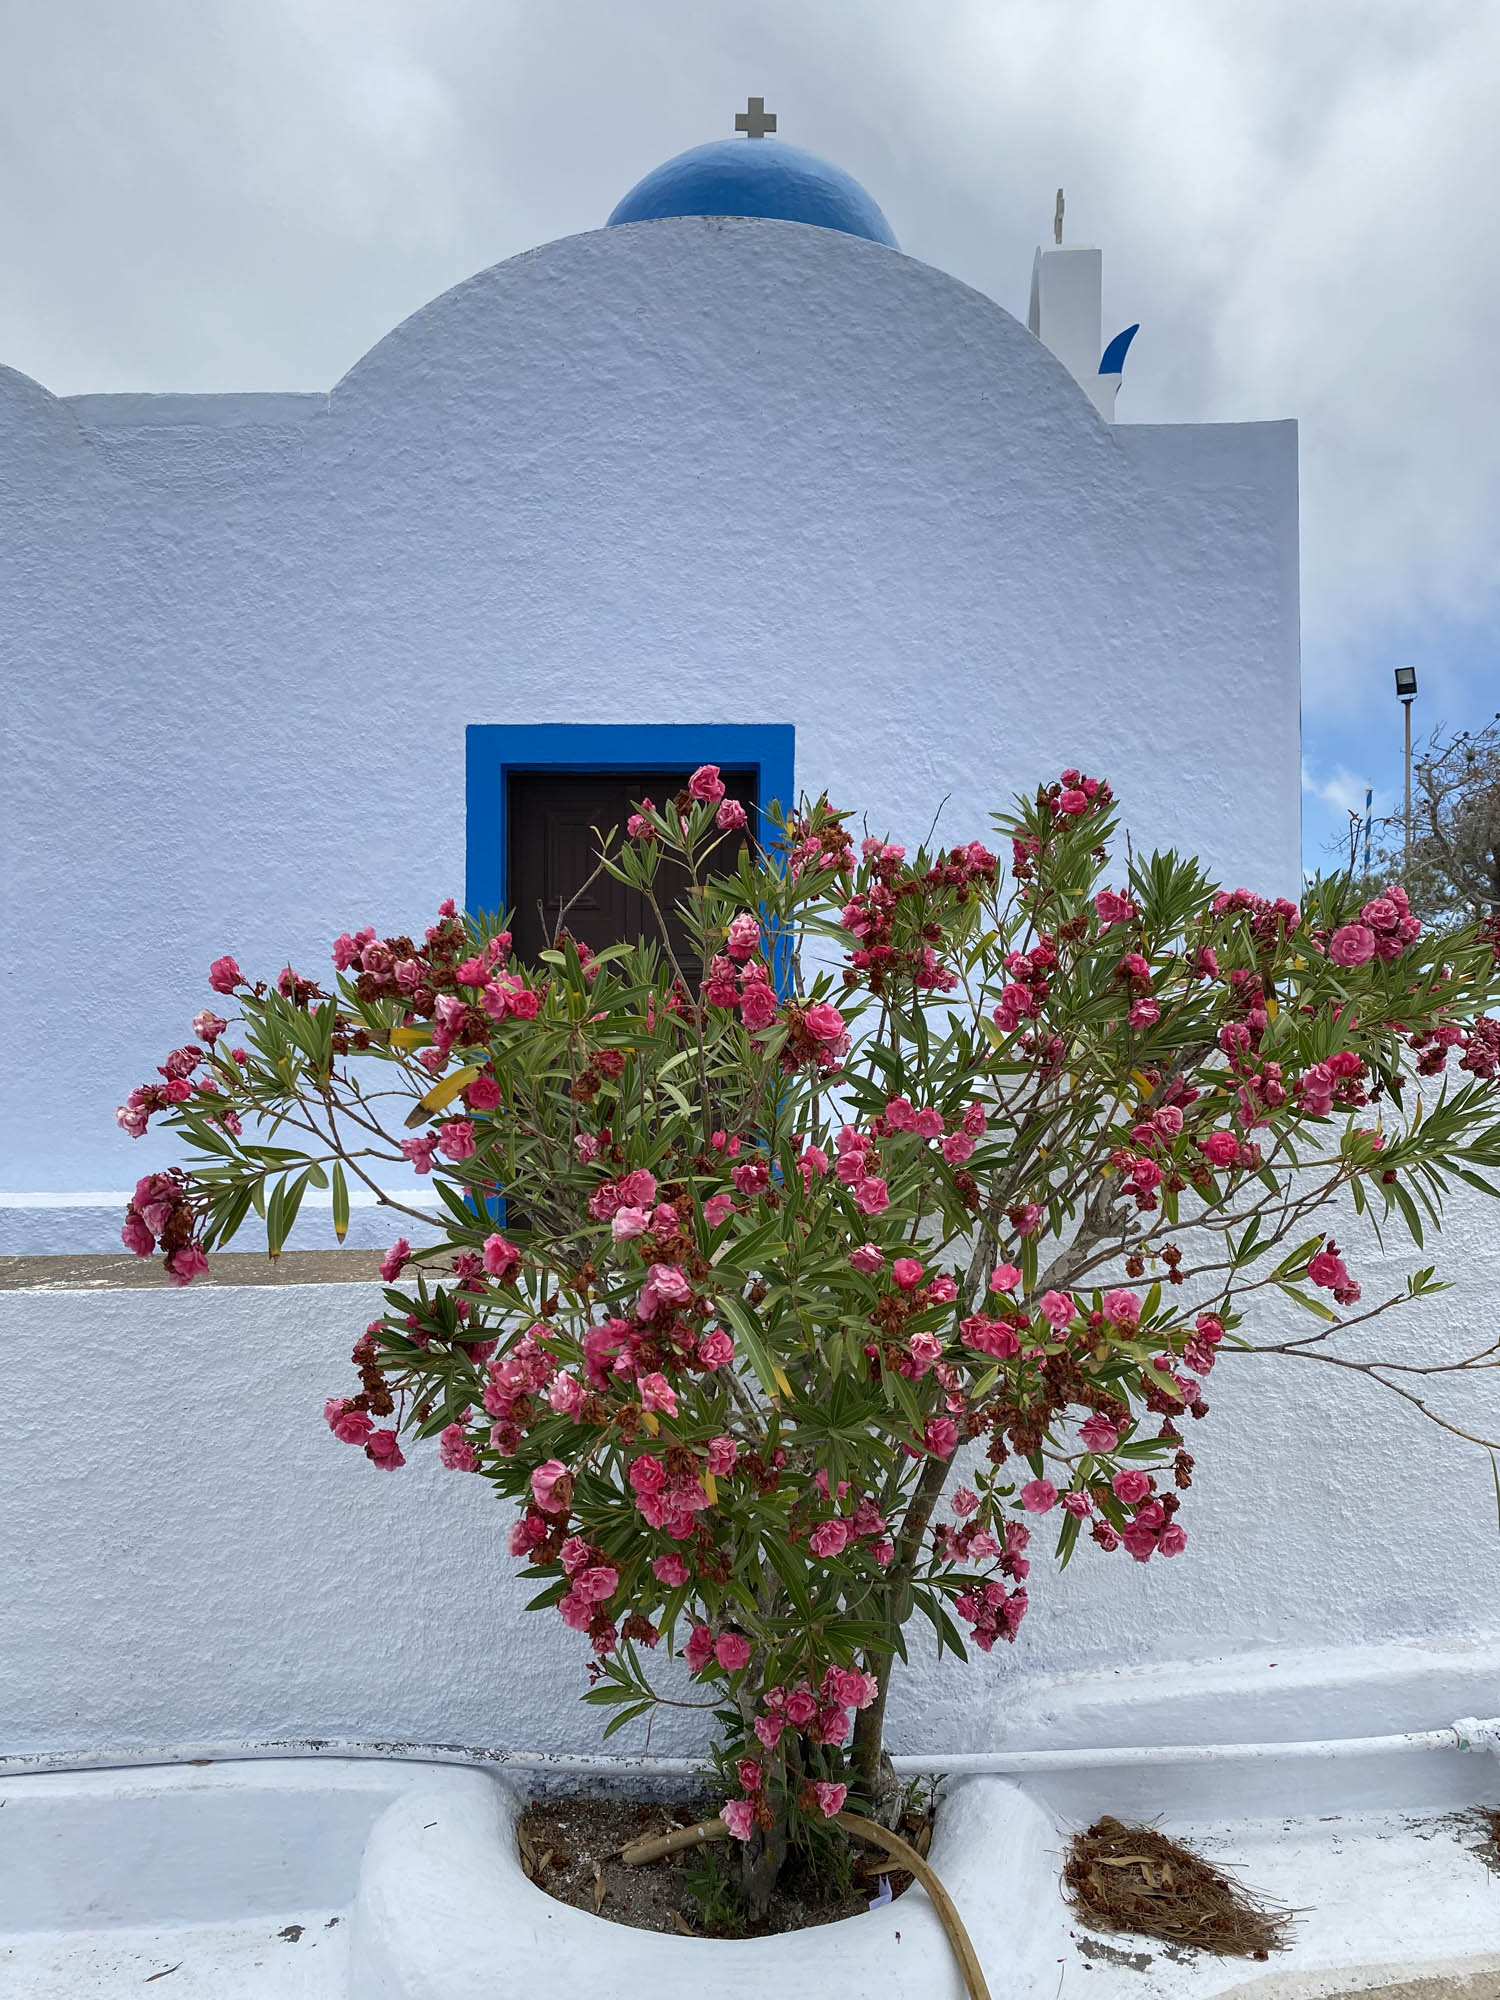 typowy grecki kościółek w kolorach białym i niebieskim oraz różowe kwiaty